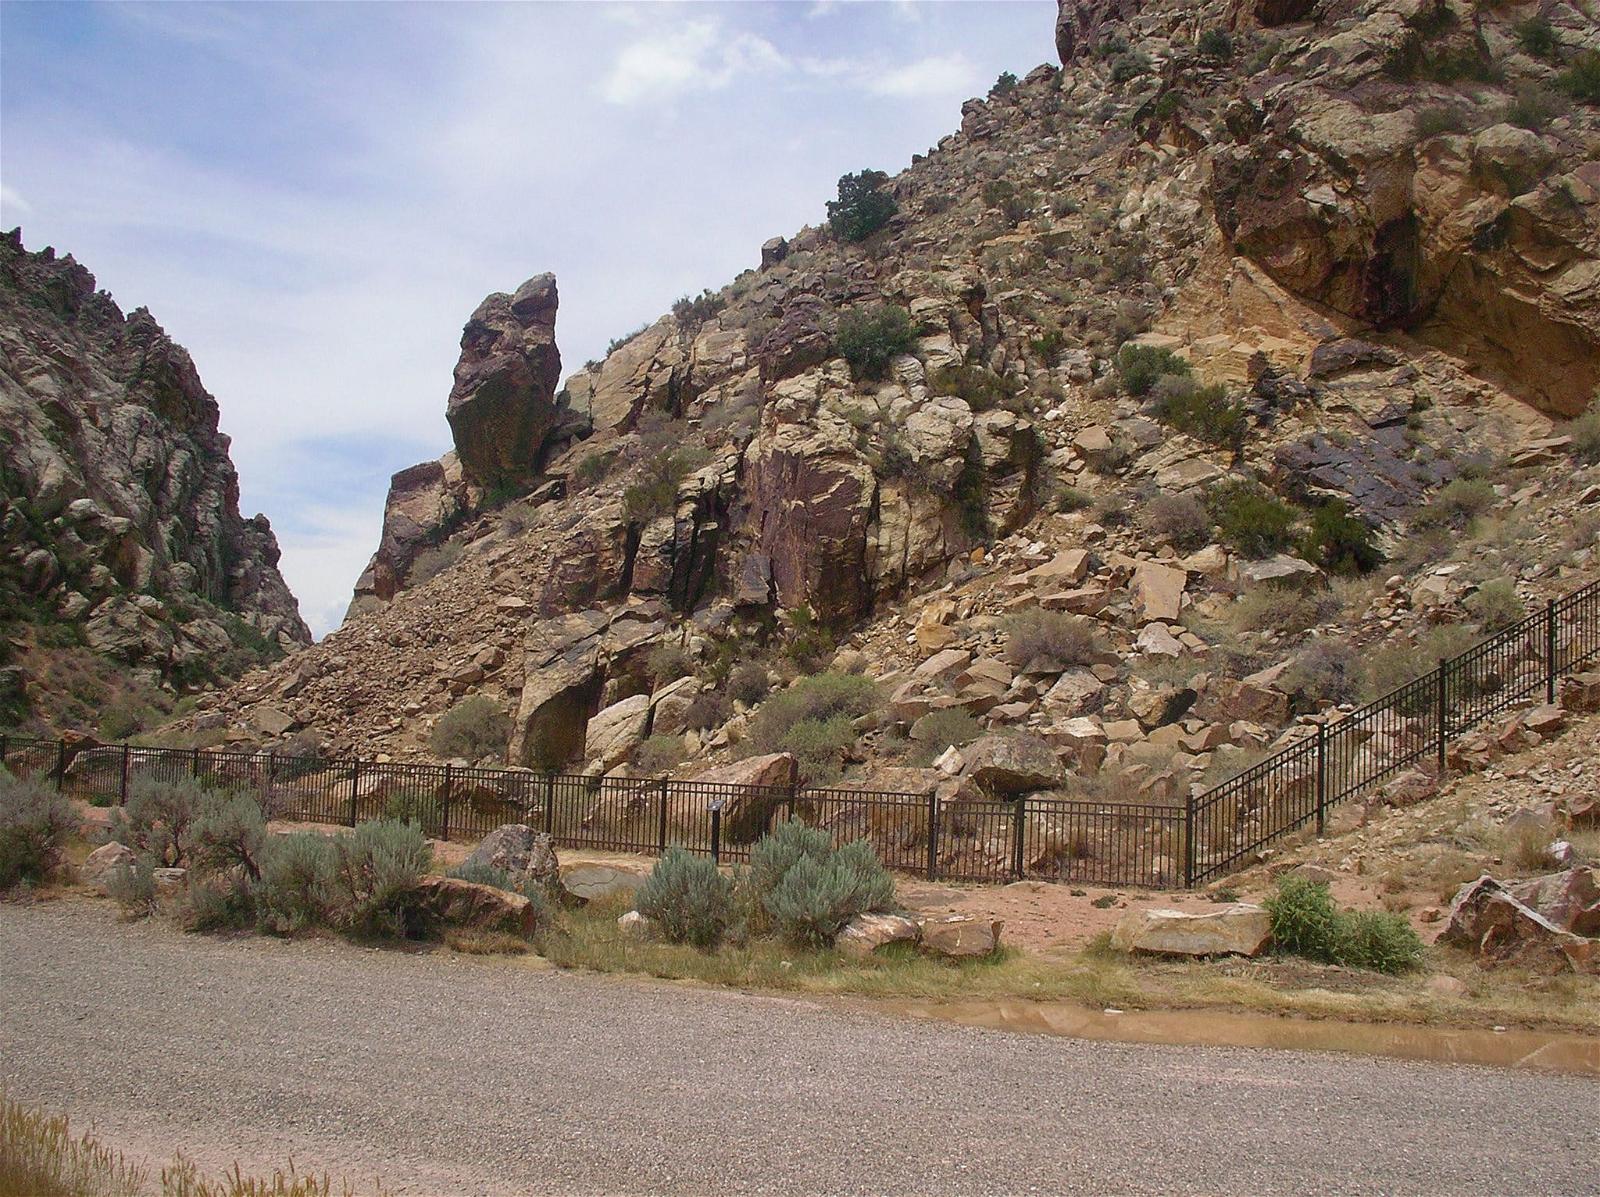 Parowan Gap Petroglyphs の画像. 